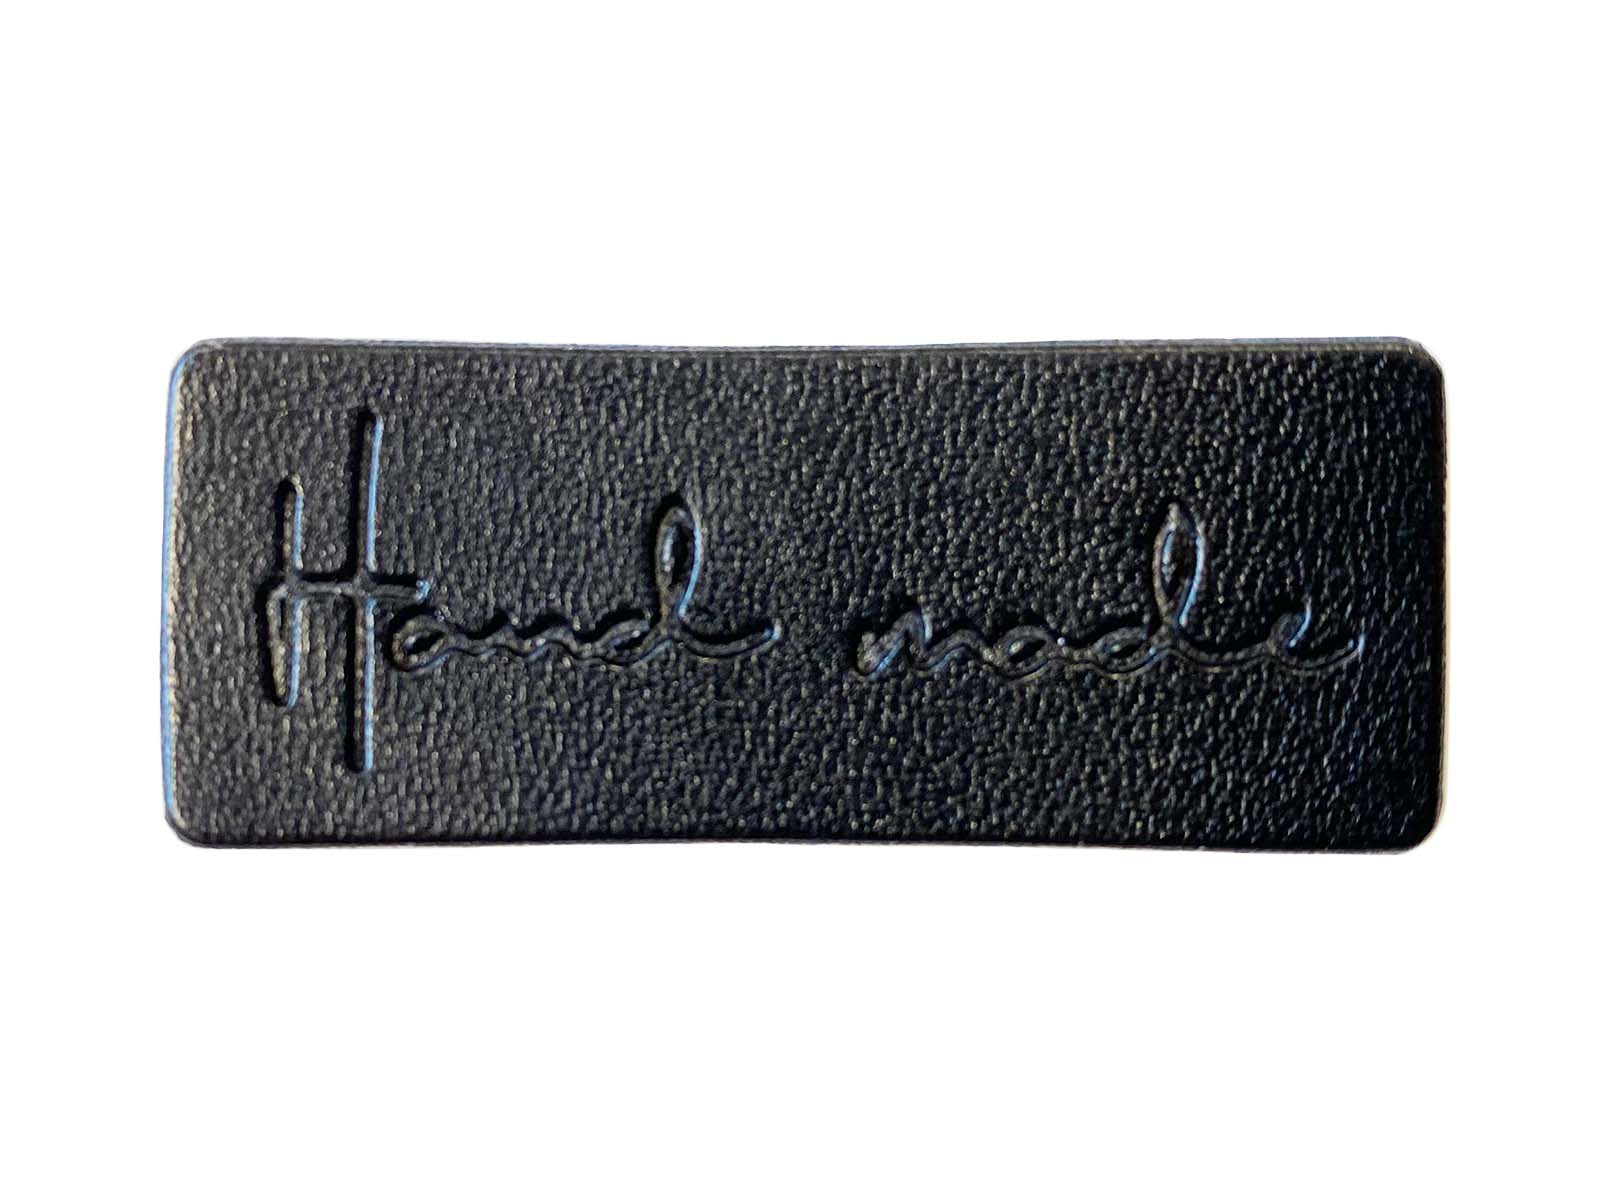 Label aus Kunstleder - "Hand made" in schwarz